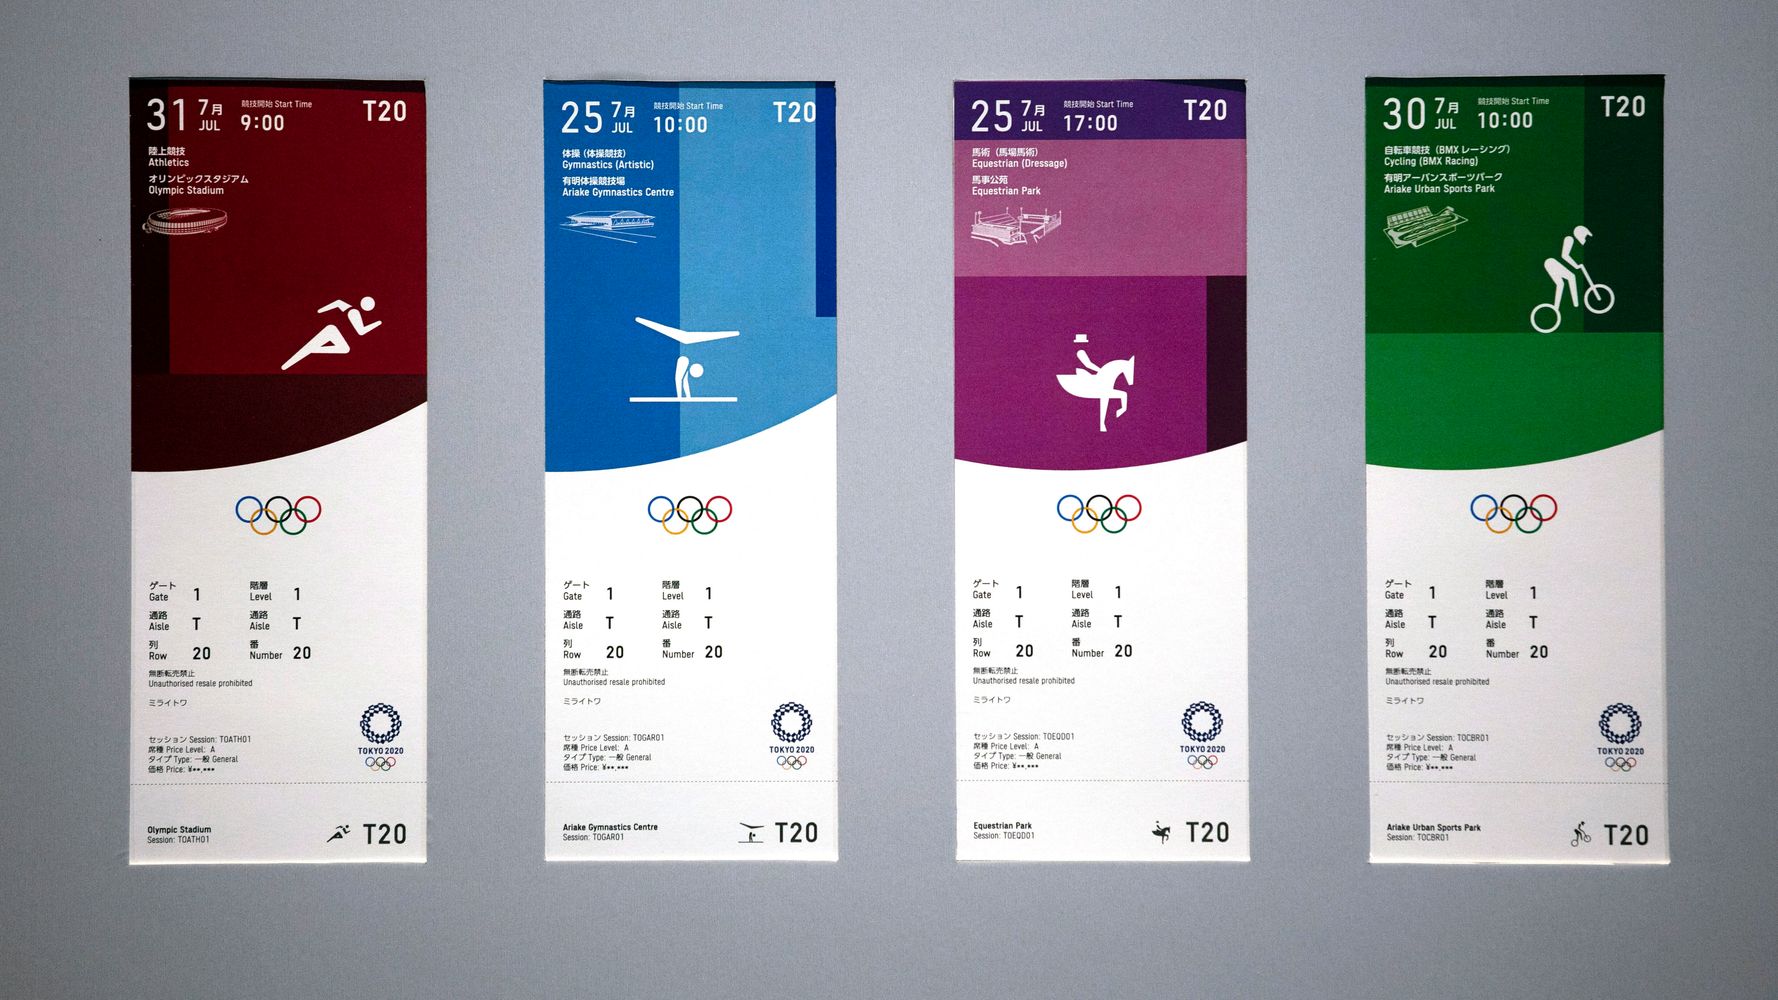 返金 オリンピック 東京2020組織委員会が大会延期に伴うチケット払い戻しについて発表｜五輪は11月10日から申請受付